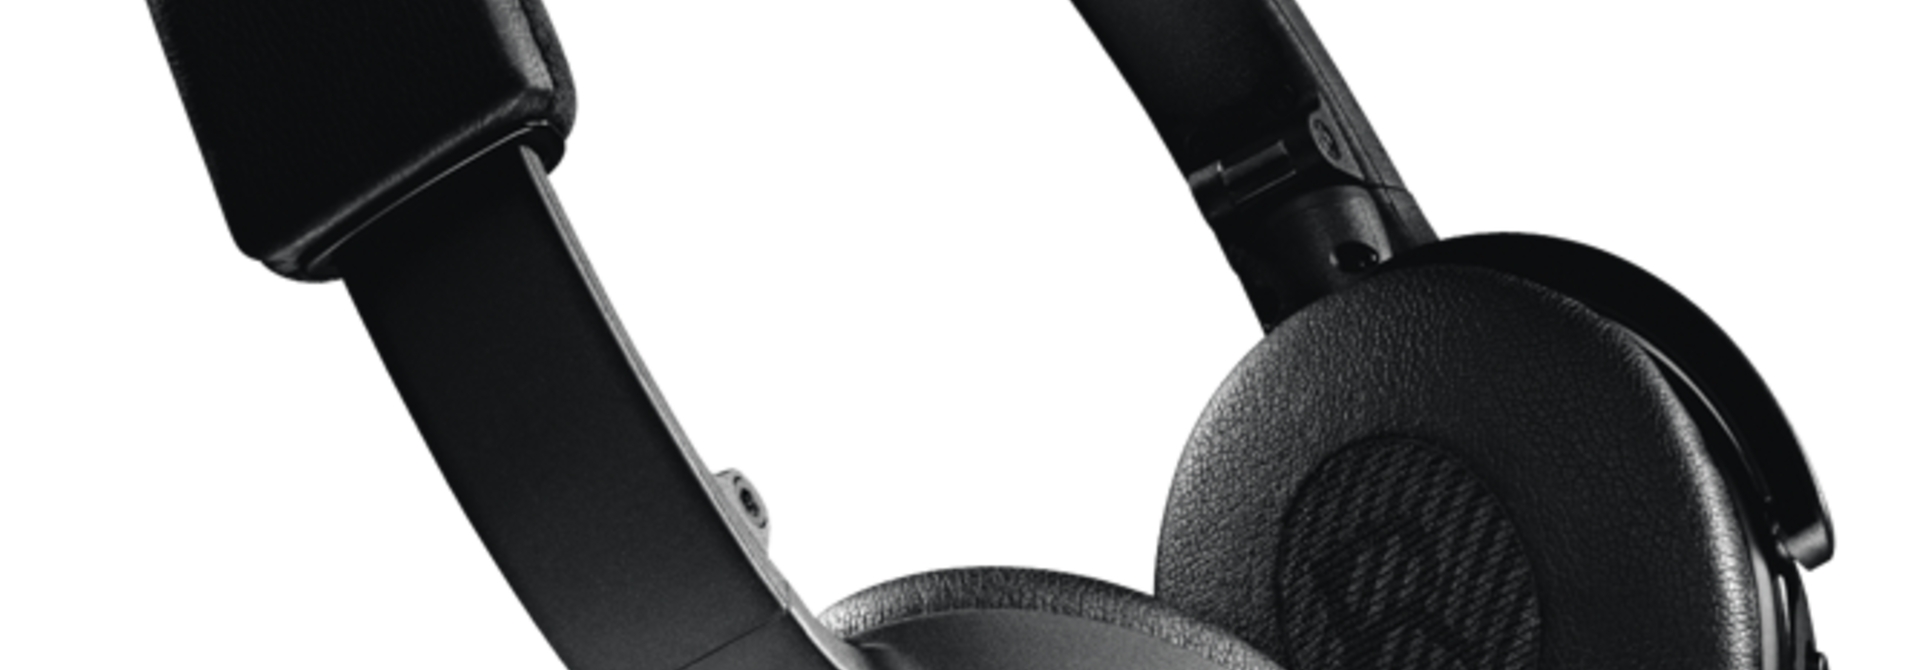 Bose on-ear wireless headphones